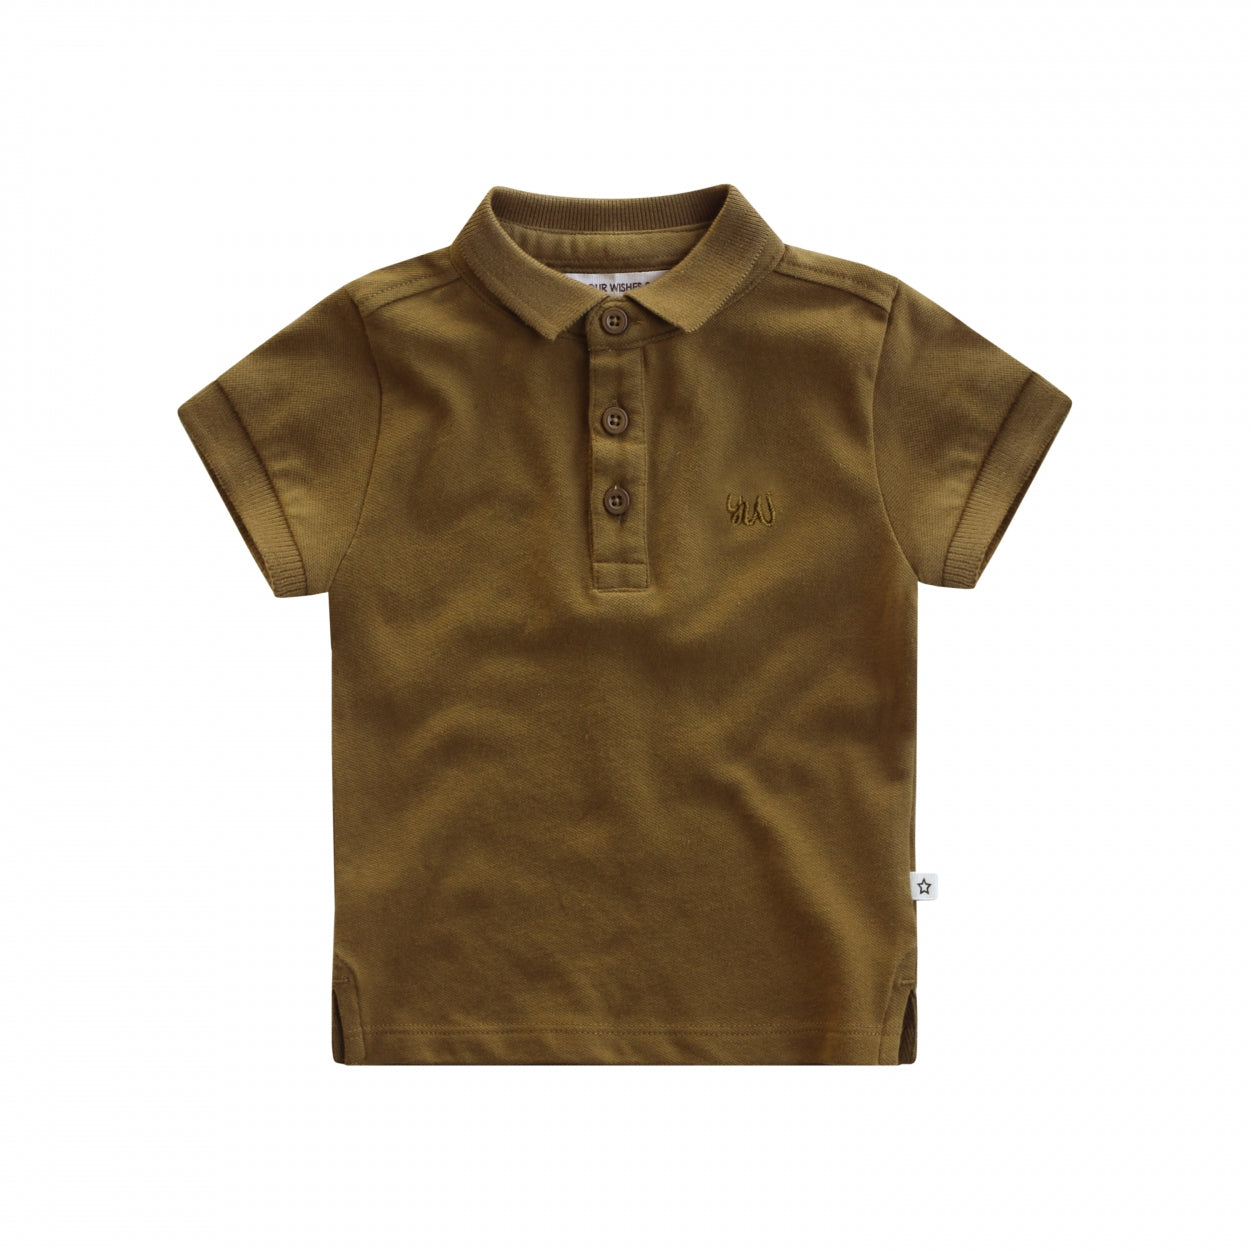 Jongens T-Shirt Solid | Djamie van Your Wishes in de kleur Plantation in maat 134/140.